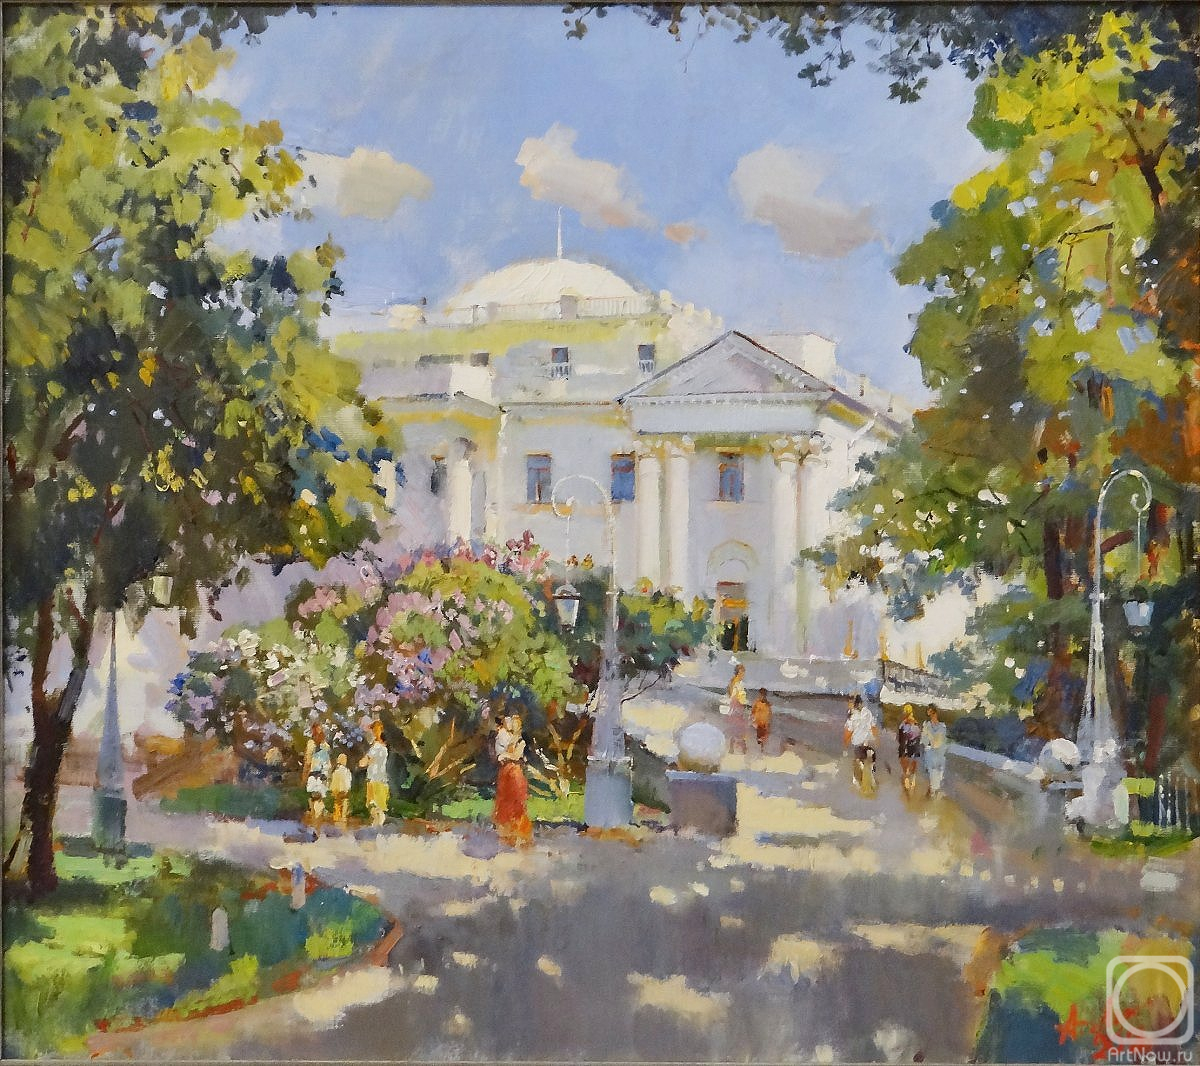 Lukash Anatoliy. Yelagin Palace. Lilac promenade